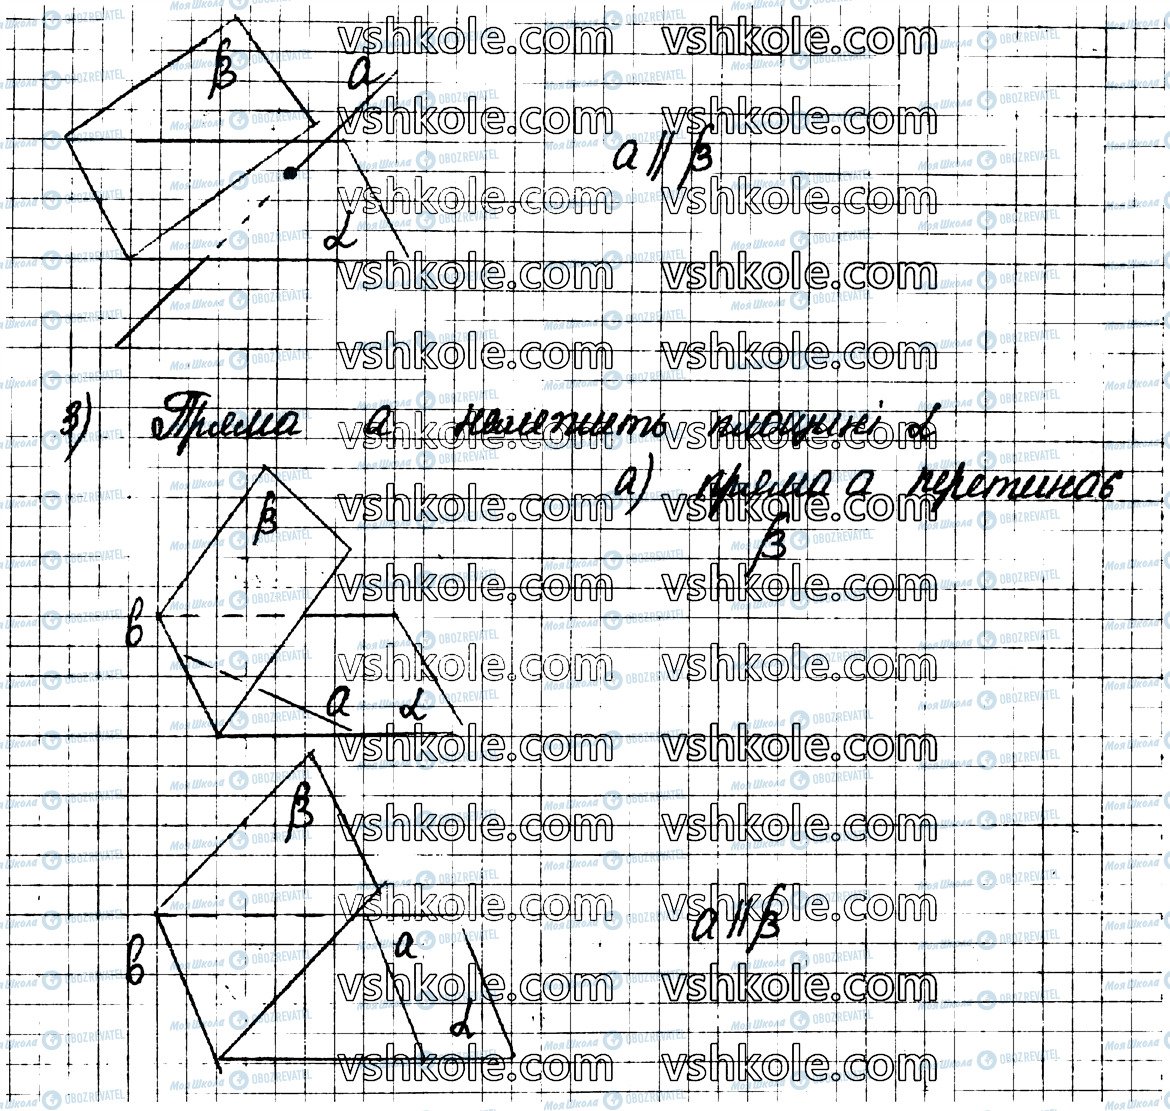 ГДЗ Геометрия 10 класс страница 24